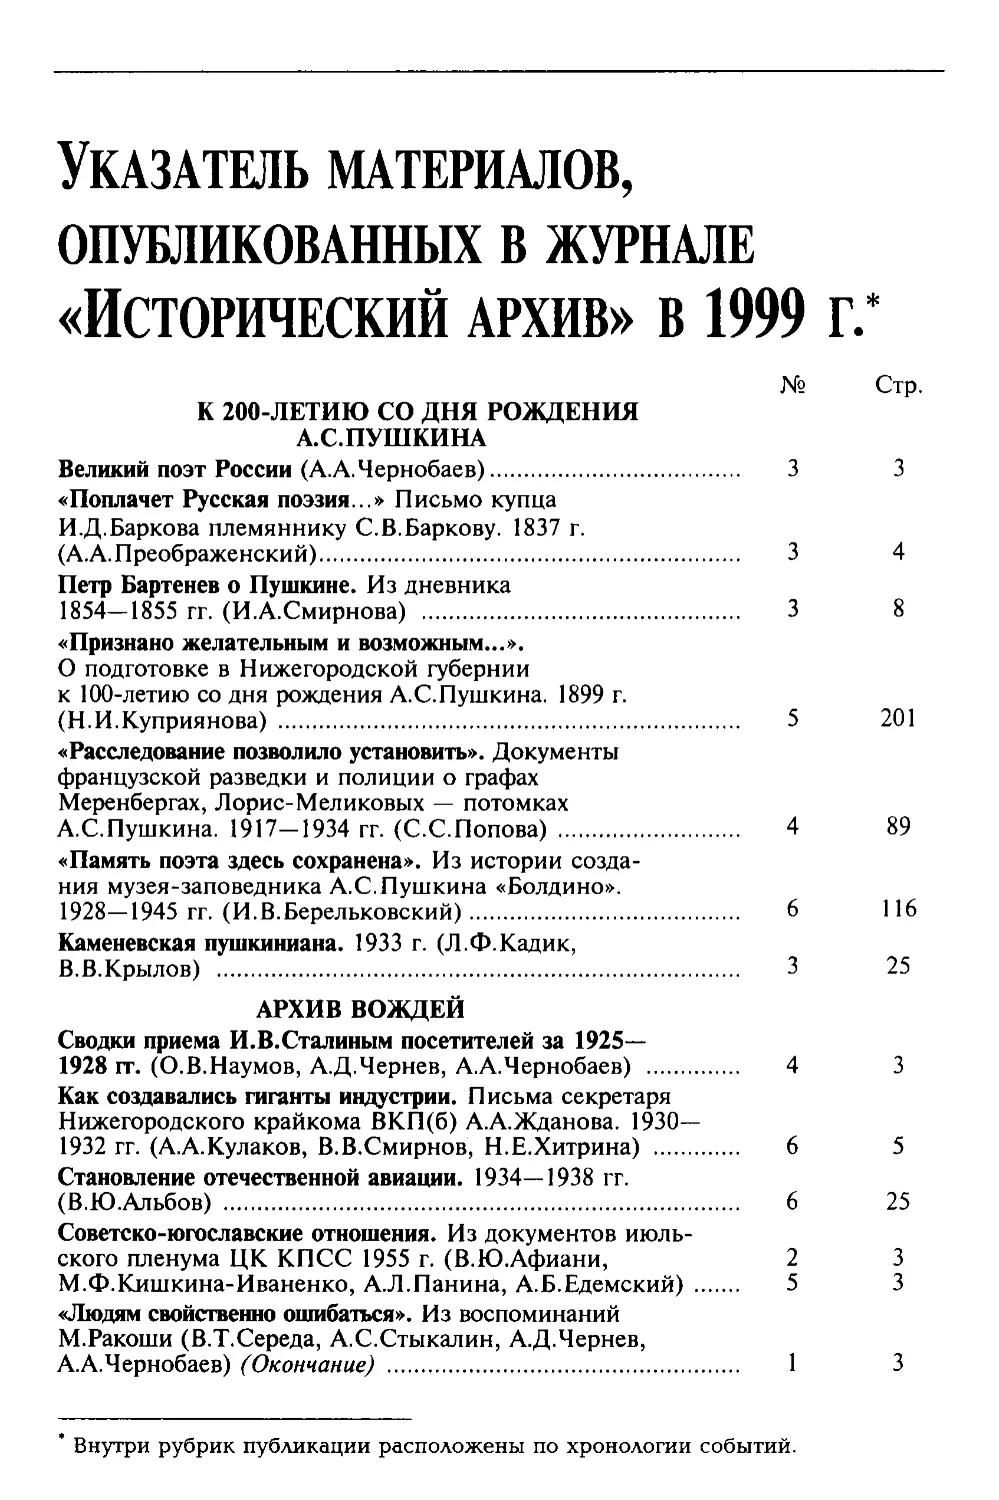 Указатель материалов, опубликованных в журнале «Исторический архив» за 1999 г